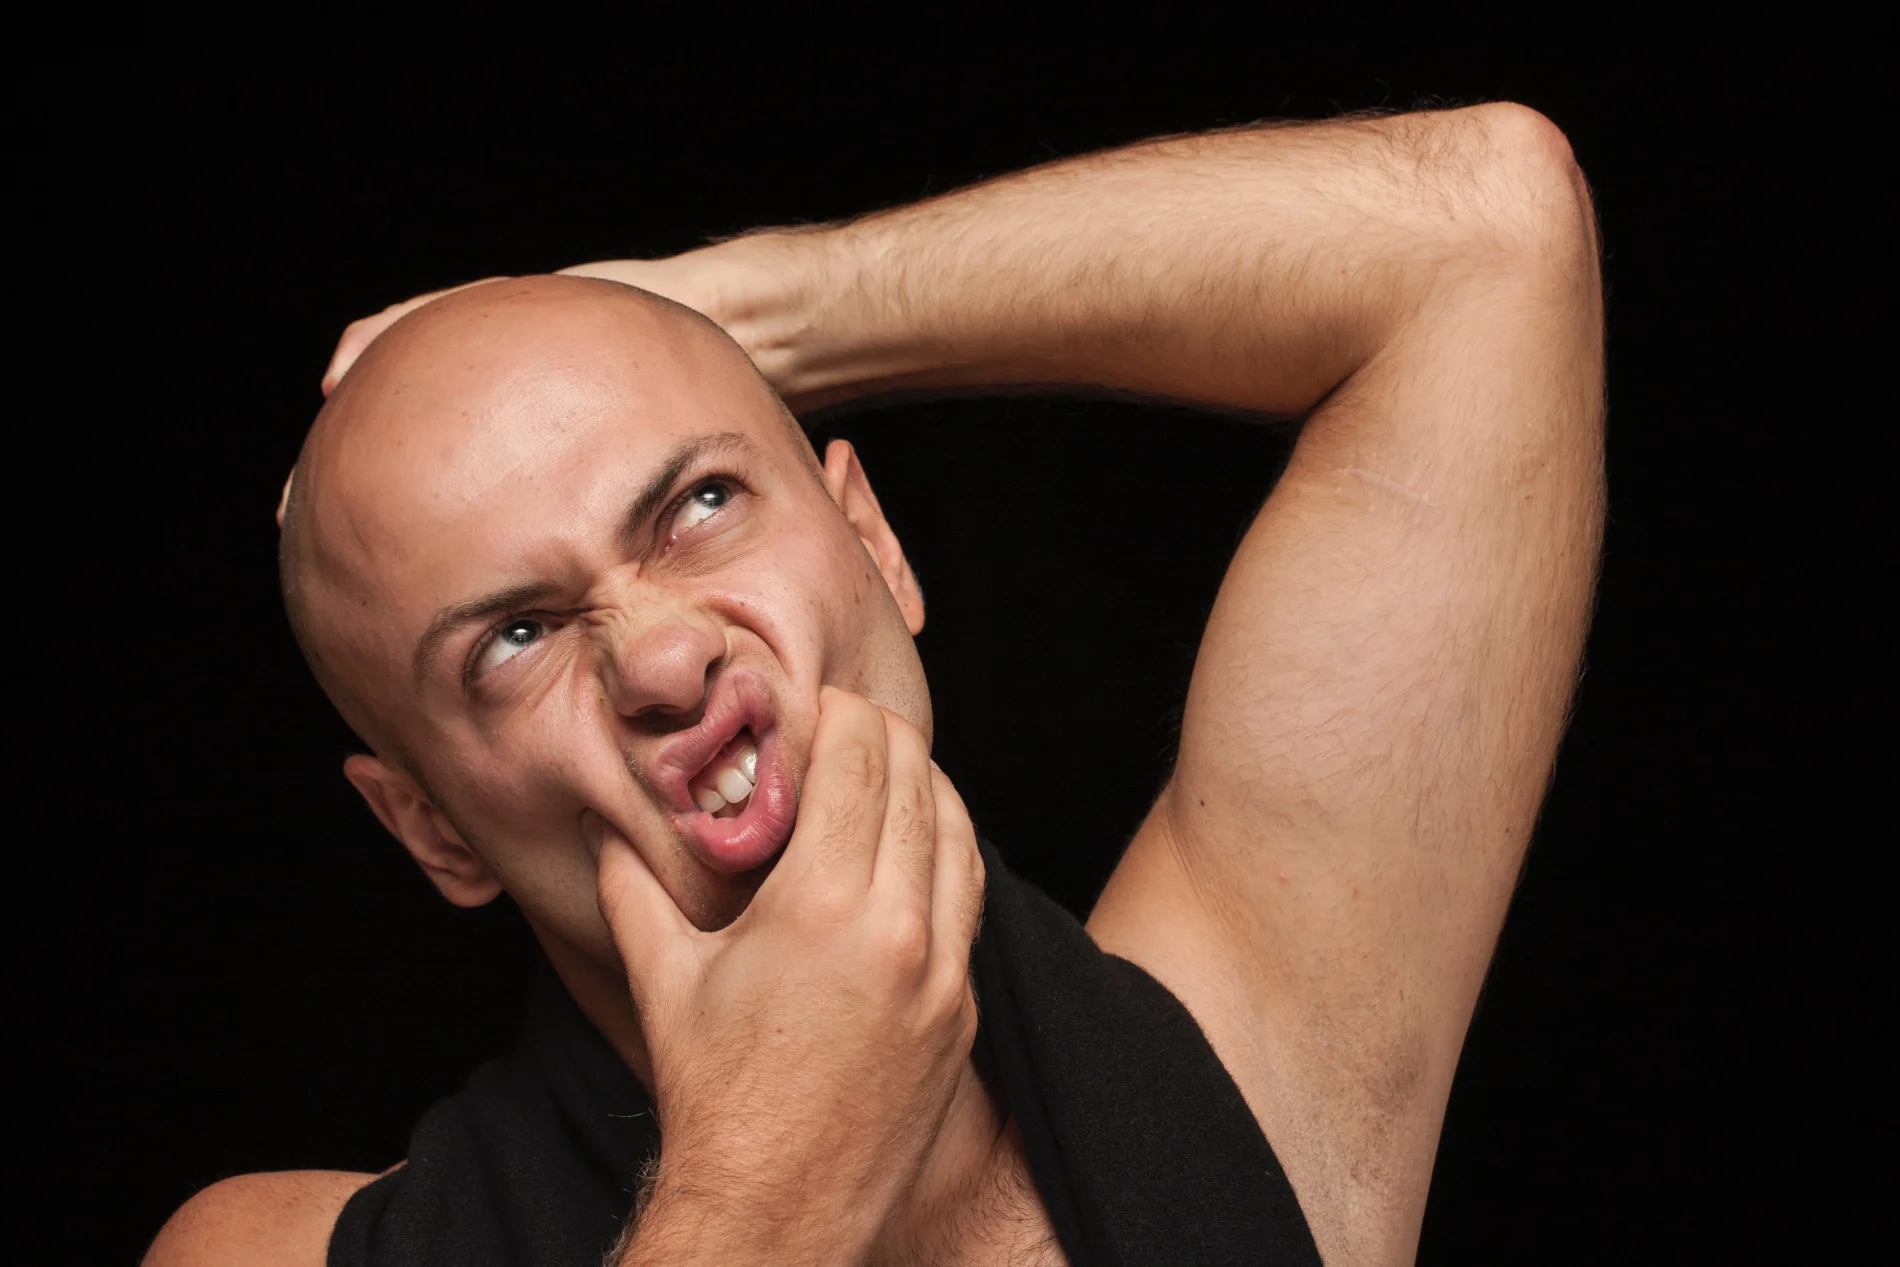 bald men blog - header image